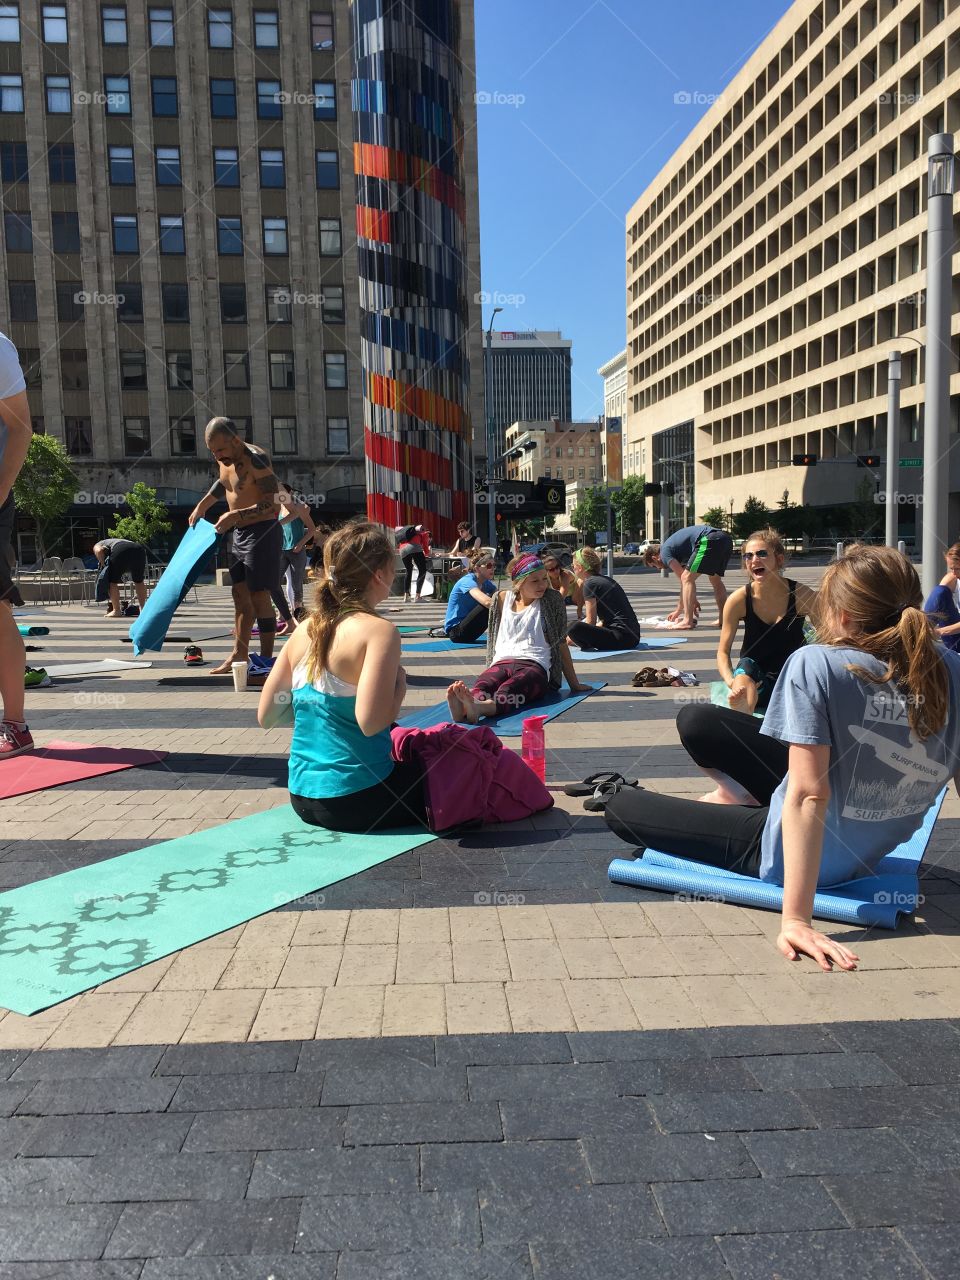 Outdoor yoga in an urban  setting